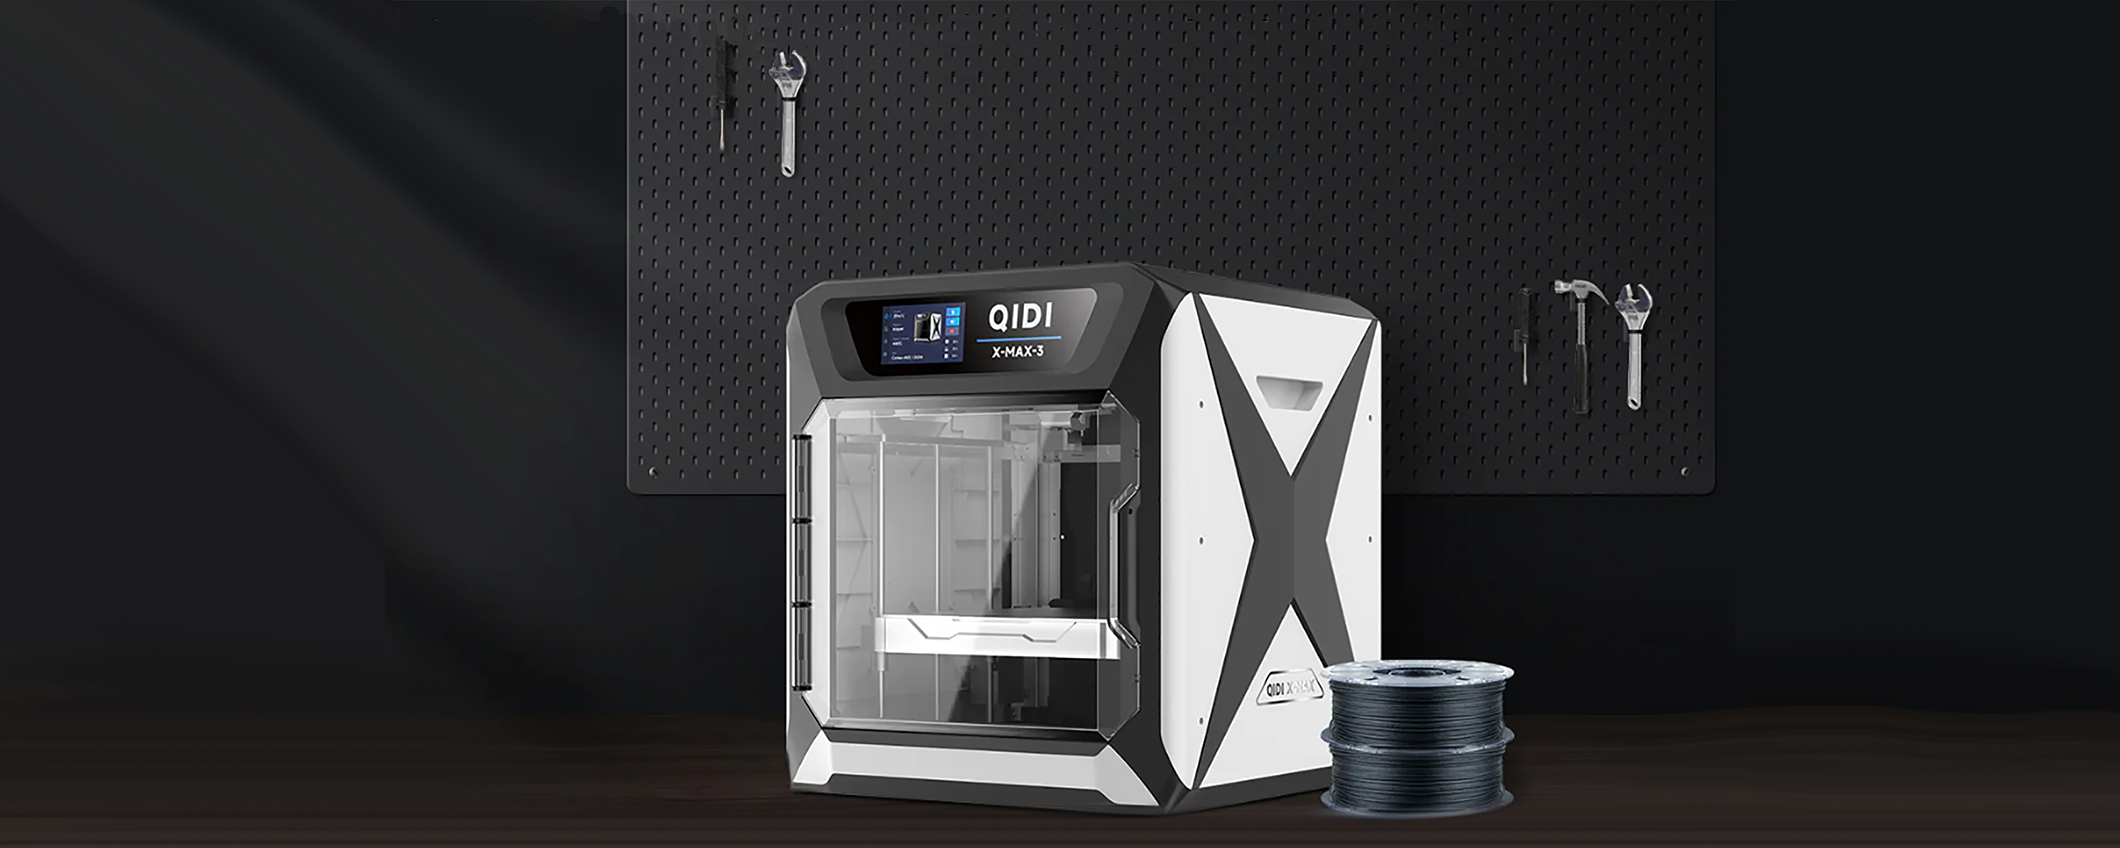 Stampanti 3D QIDI: perché sceglierle rispetto alle concorrenti